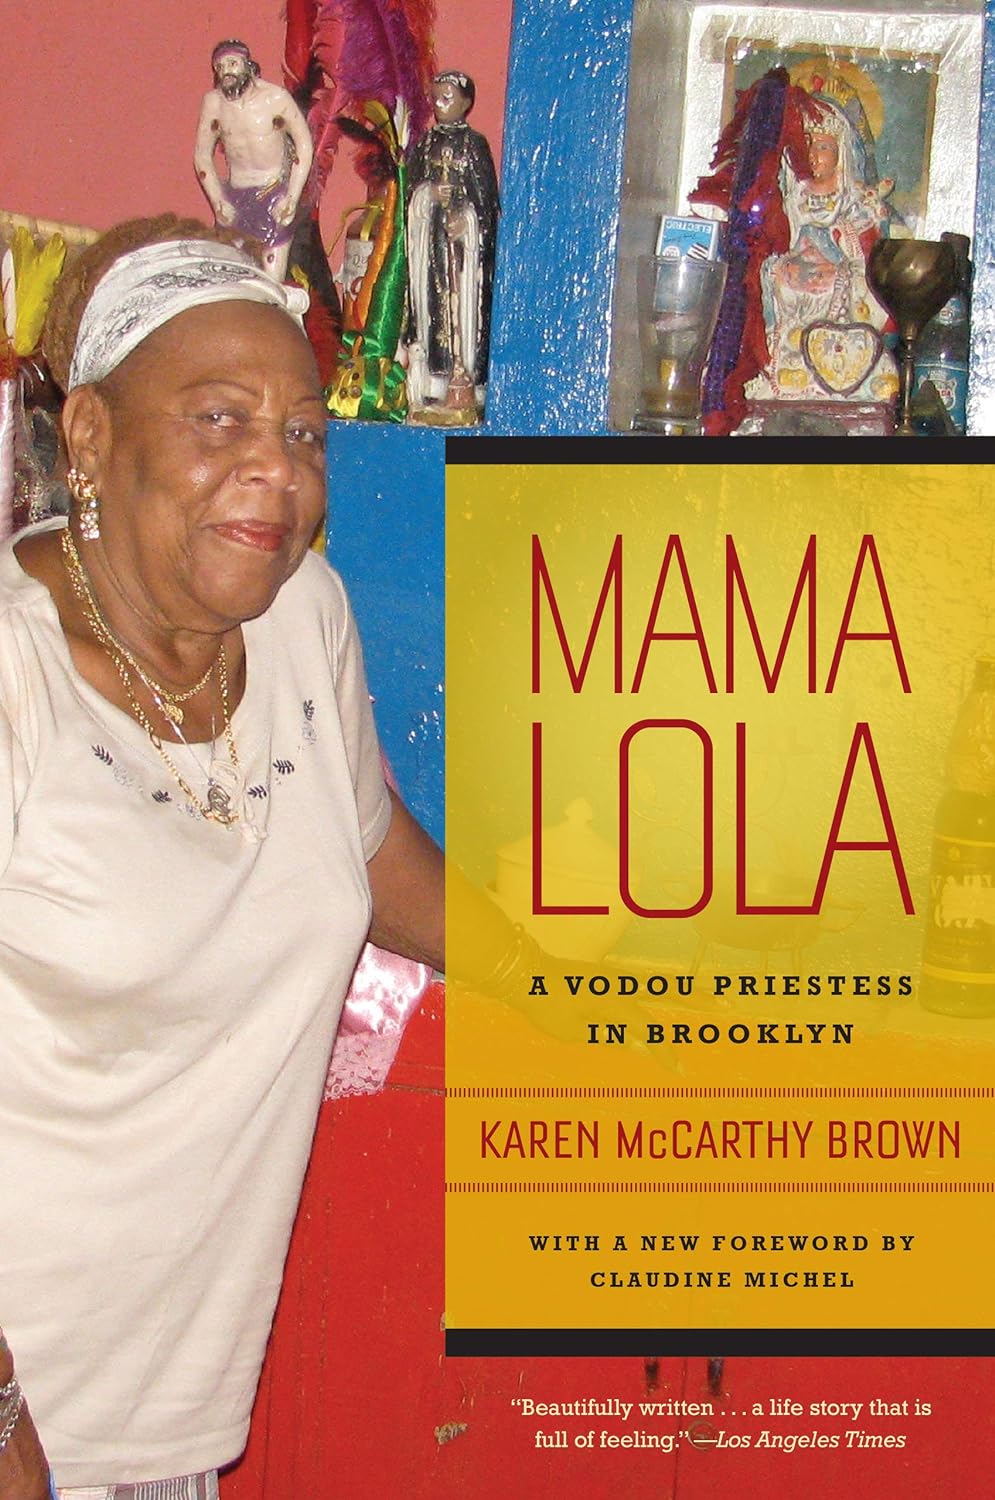 Karen McCarthy Brown, Claudine Michel: Mama Lola (2011, University of California Press)